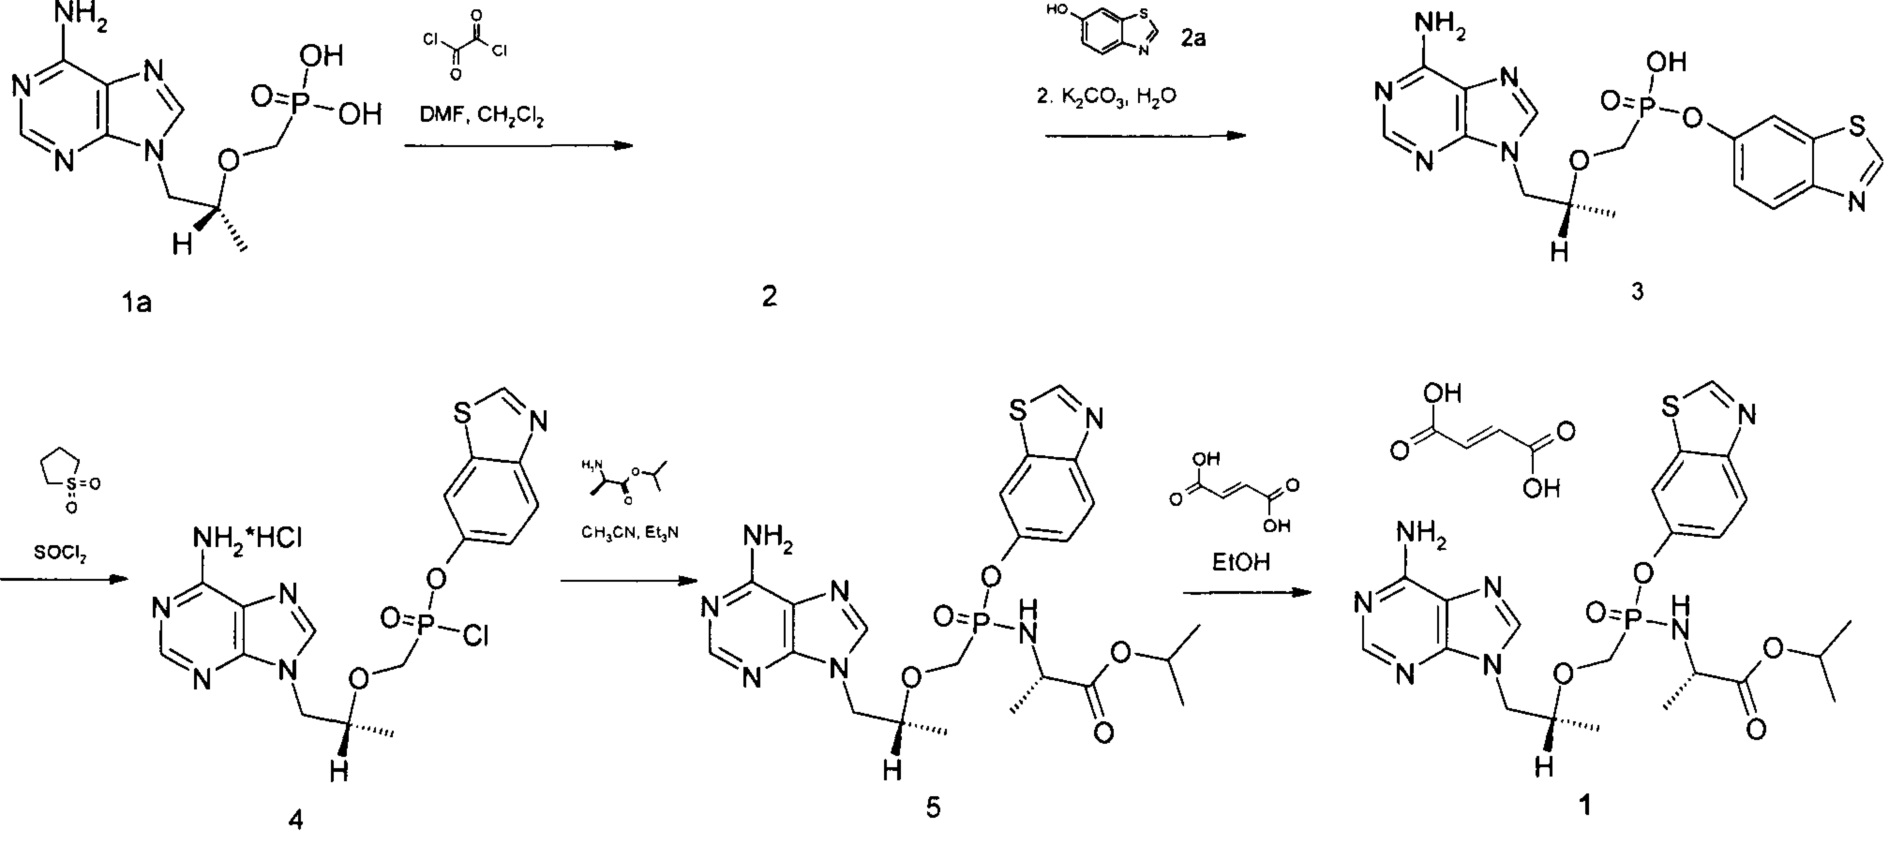 Изопропил N-[{ [(1R)-2-(6-амино-9H-пурин-9-ил)-1-метилэтокси]метил} (1,3-бензотиазол-6-ил-окси)фосфорил]-L-аланинат фумарат в качестве противовирусного препарата - пролекарства Тенофовира